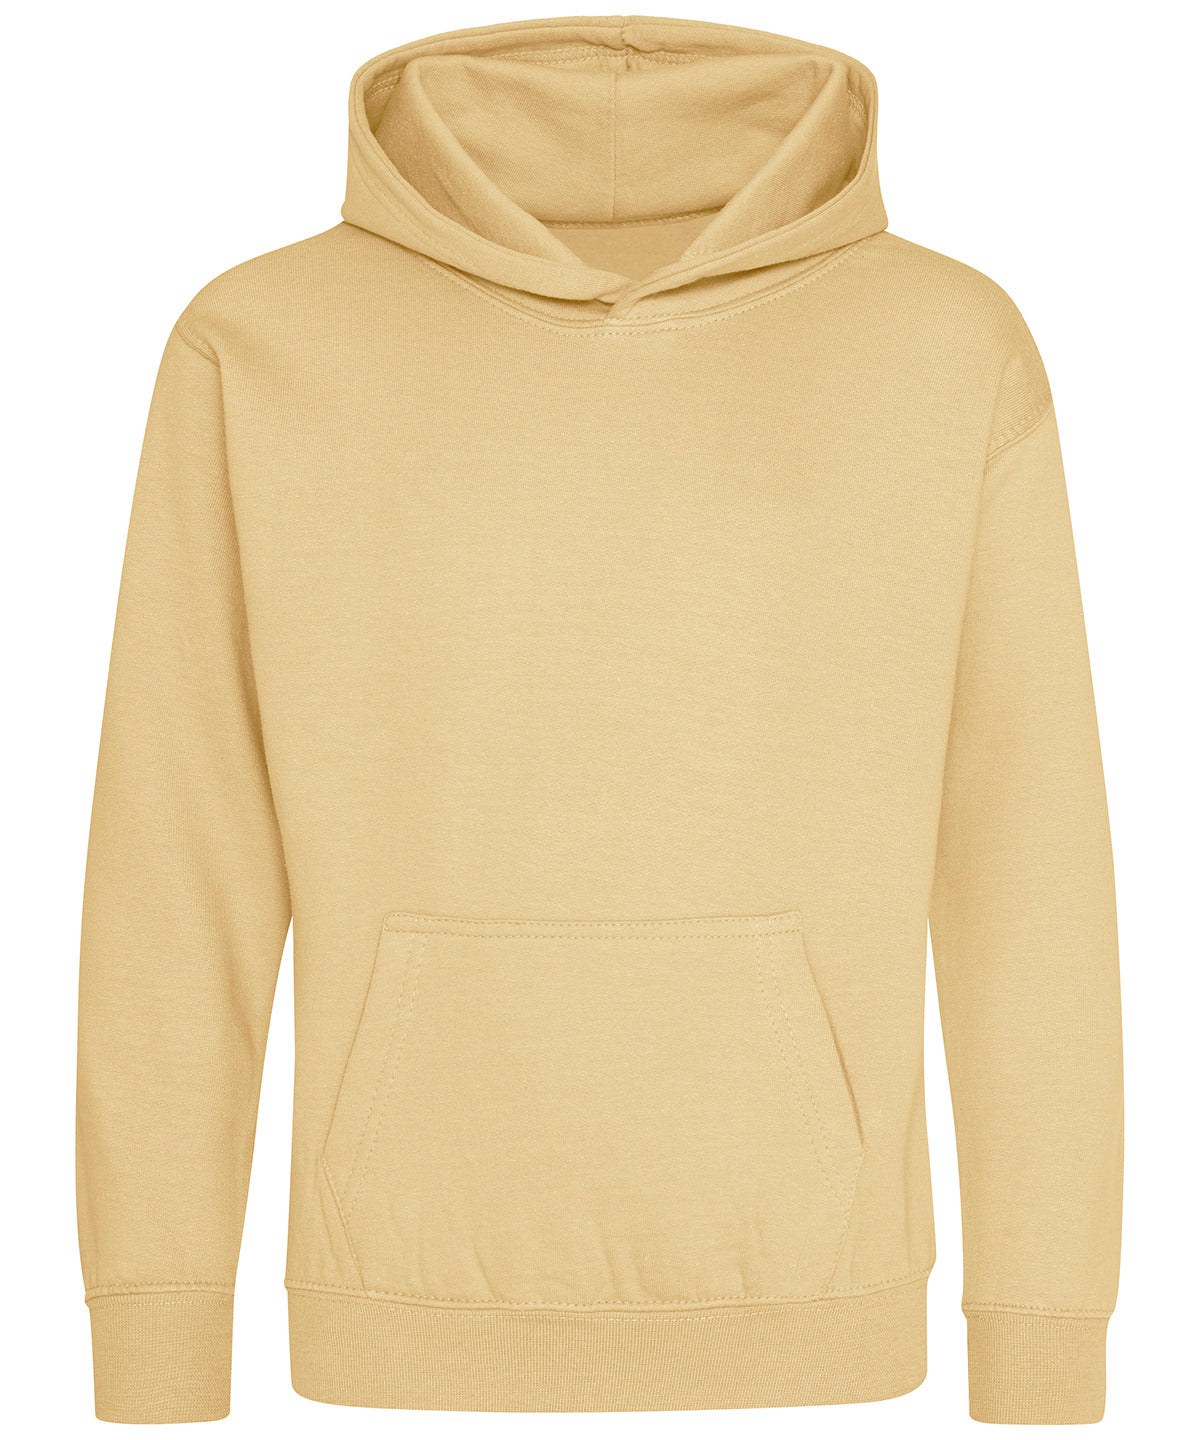 Personalised Hoodies - Heather Grey AWDis Just Hoods Kids hoodie